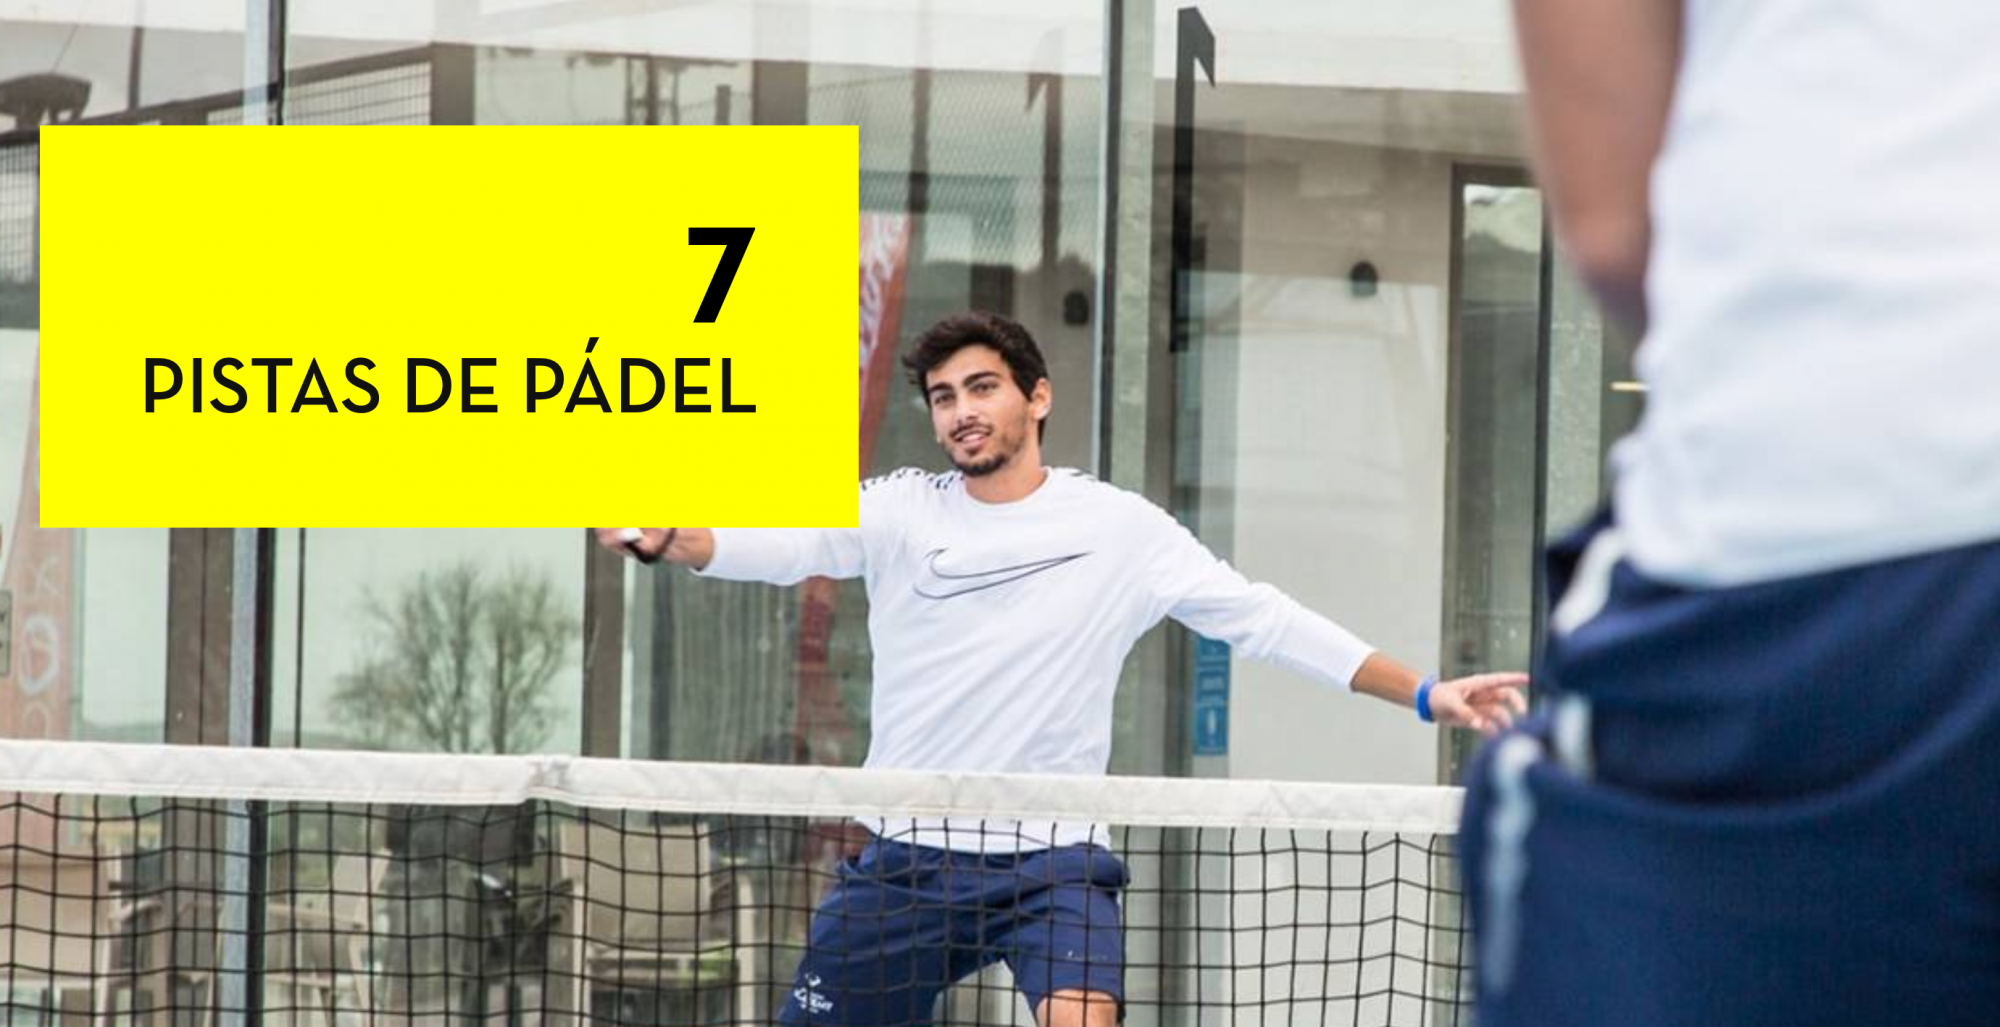 Rafa Nadal Academy, it's 7 fields of padel !